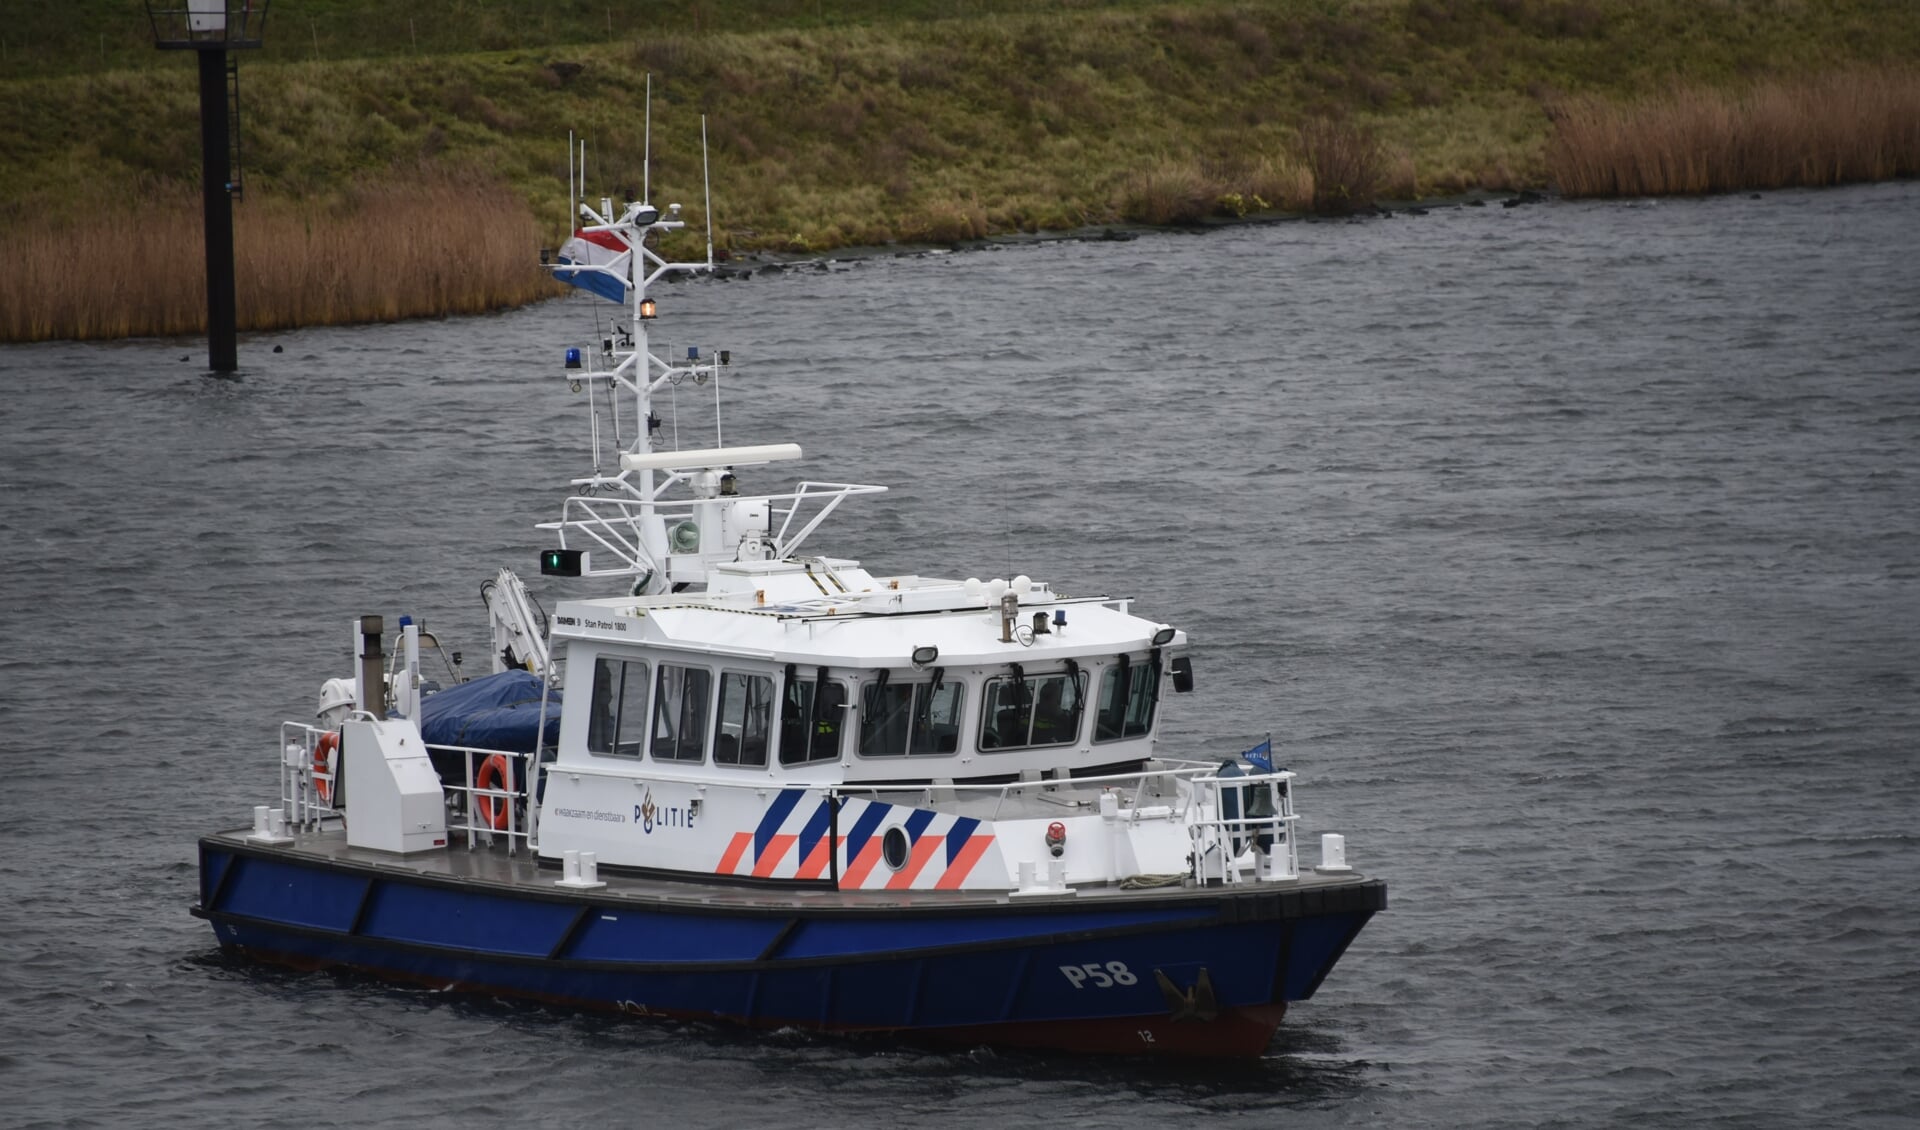 De politie heeft in 2019 en 2020 diverse keren in het Schelde-Rijnkanaal gezocht naar het lichaam van de Belg Johan van der Heyden. Dat werd uiteindelijk gevonden bij de Vossemeerse brug.